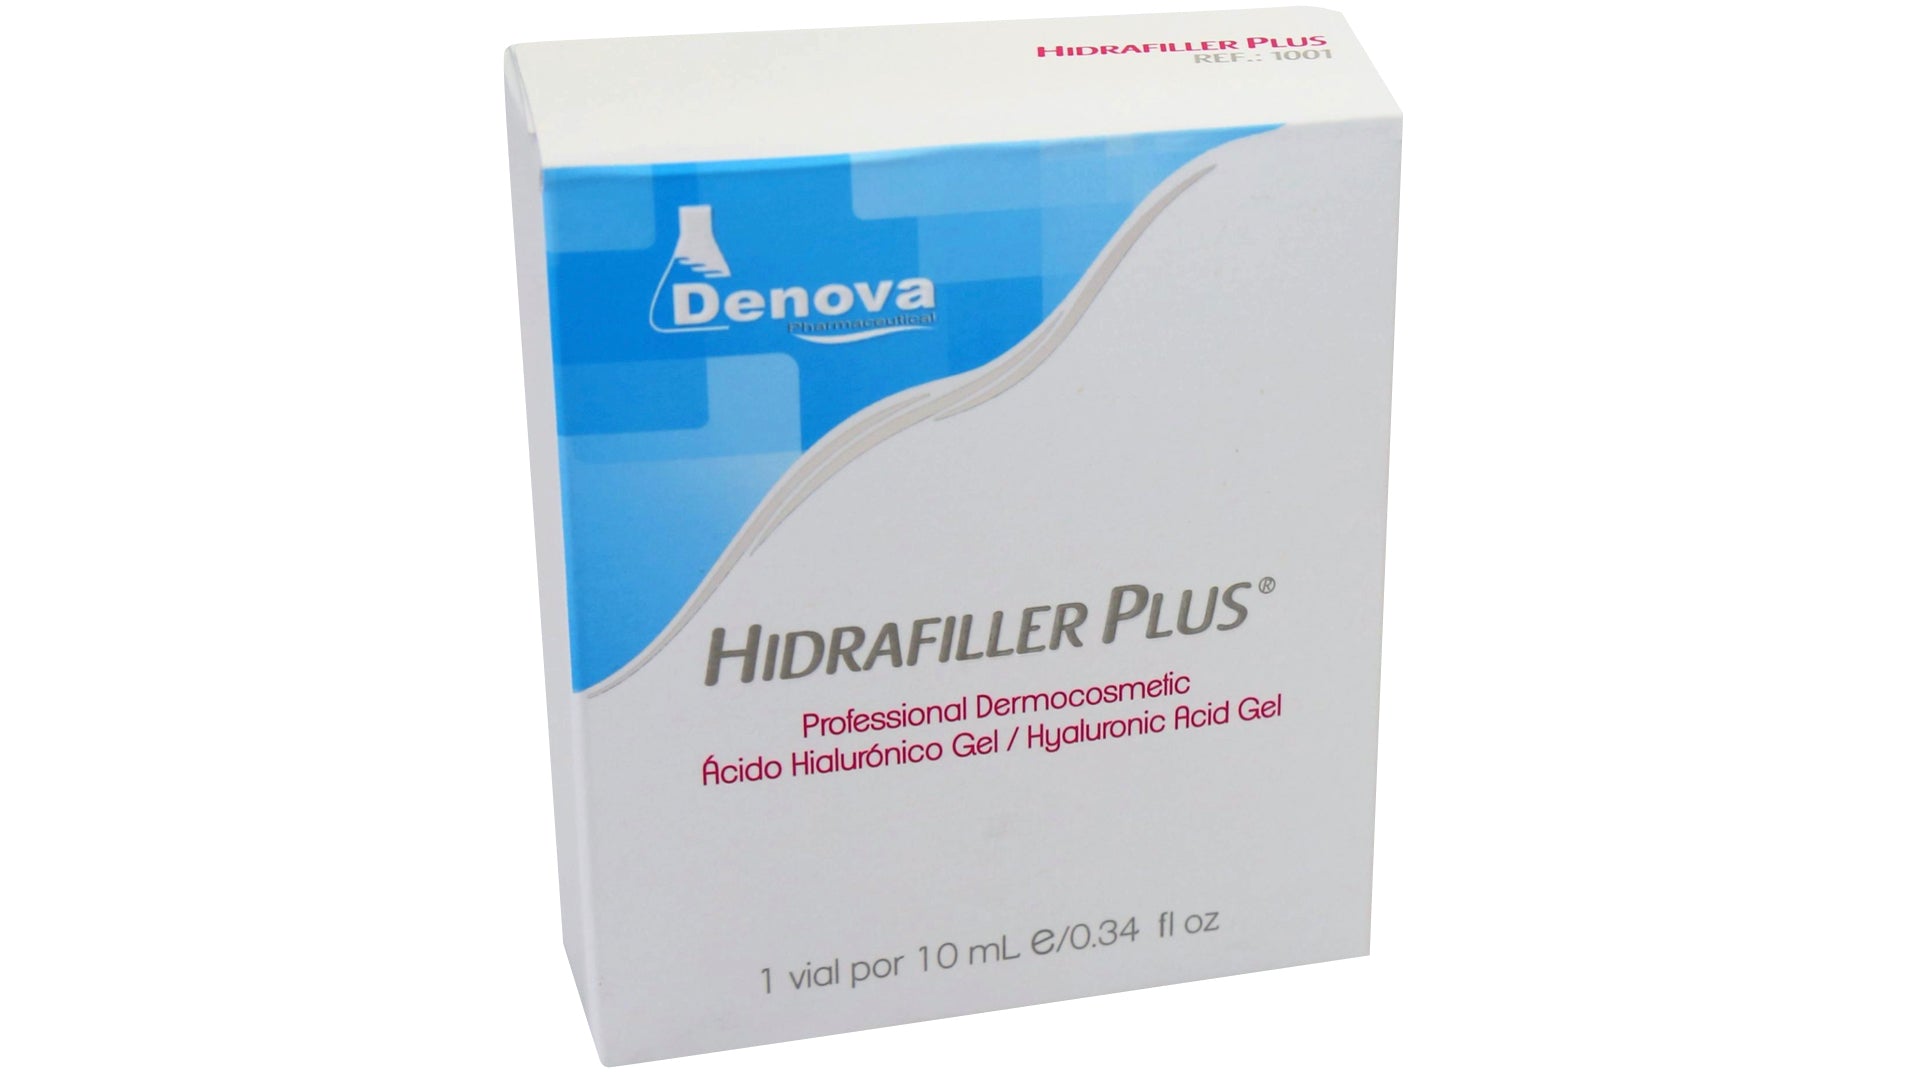 Hidrafiller Plus 3.5% By Denova - Gel Potenciador de Ácido Hialurónico - Hidratación Intensiva